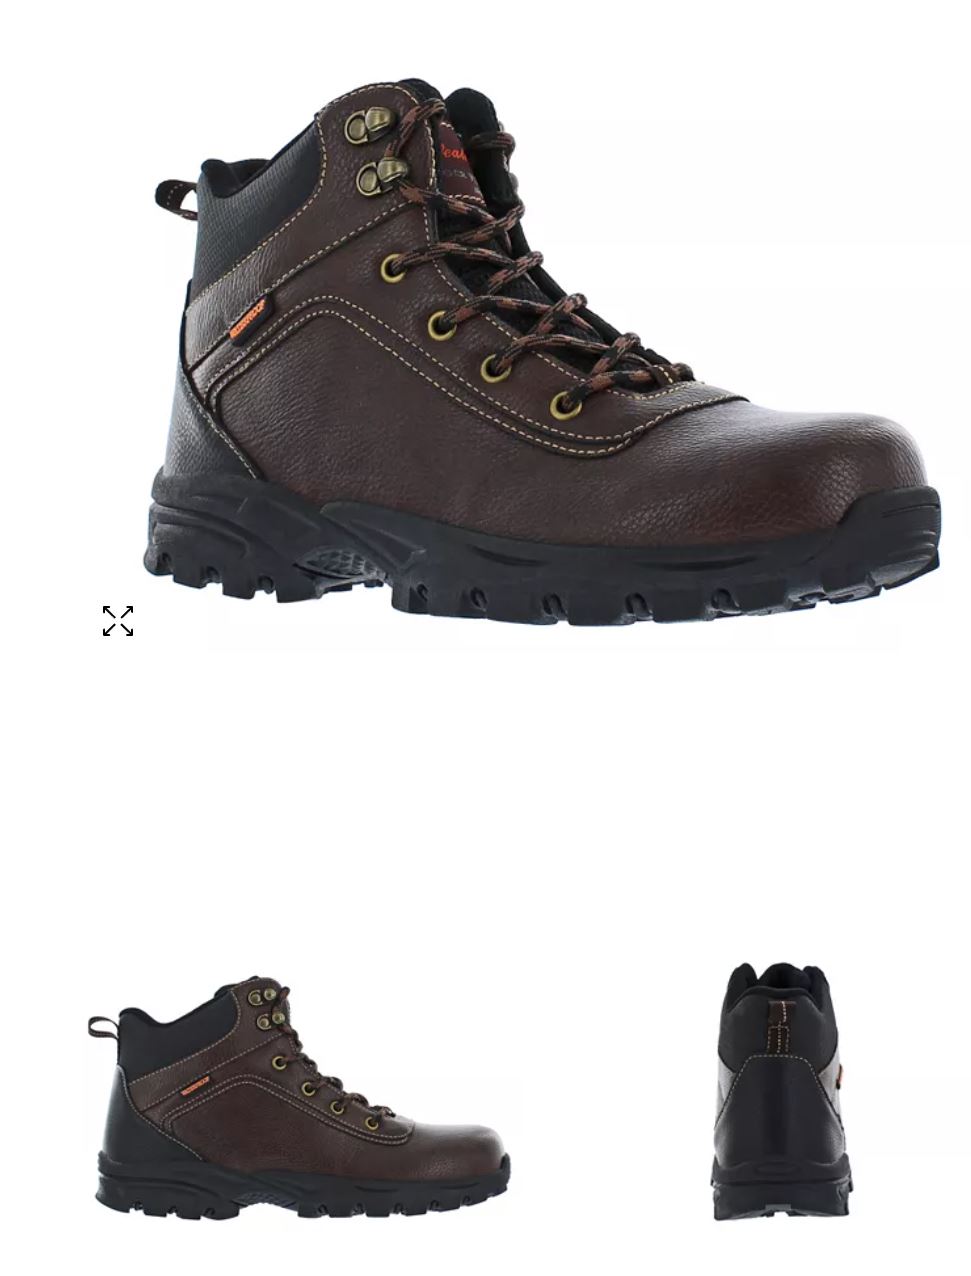 Men's Jace Hiker Boots - WEATHERPROOF VINTAGE - LIMITED-TIME SPECIAL $19.99